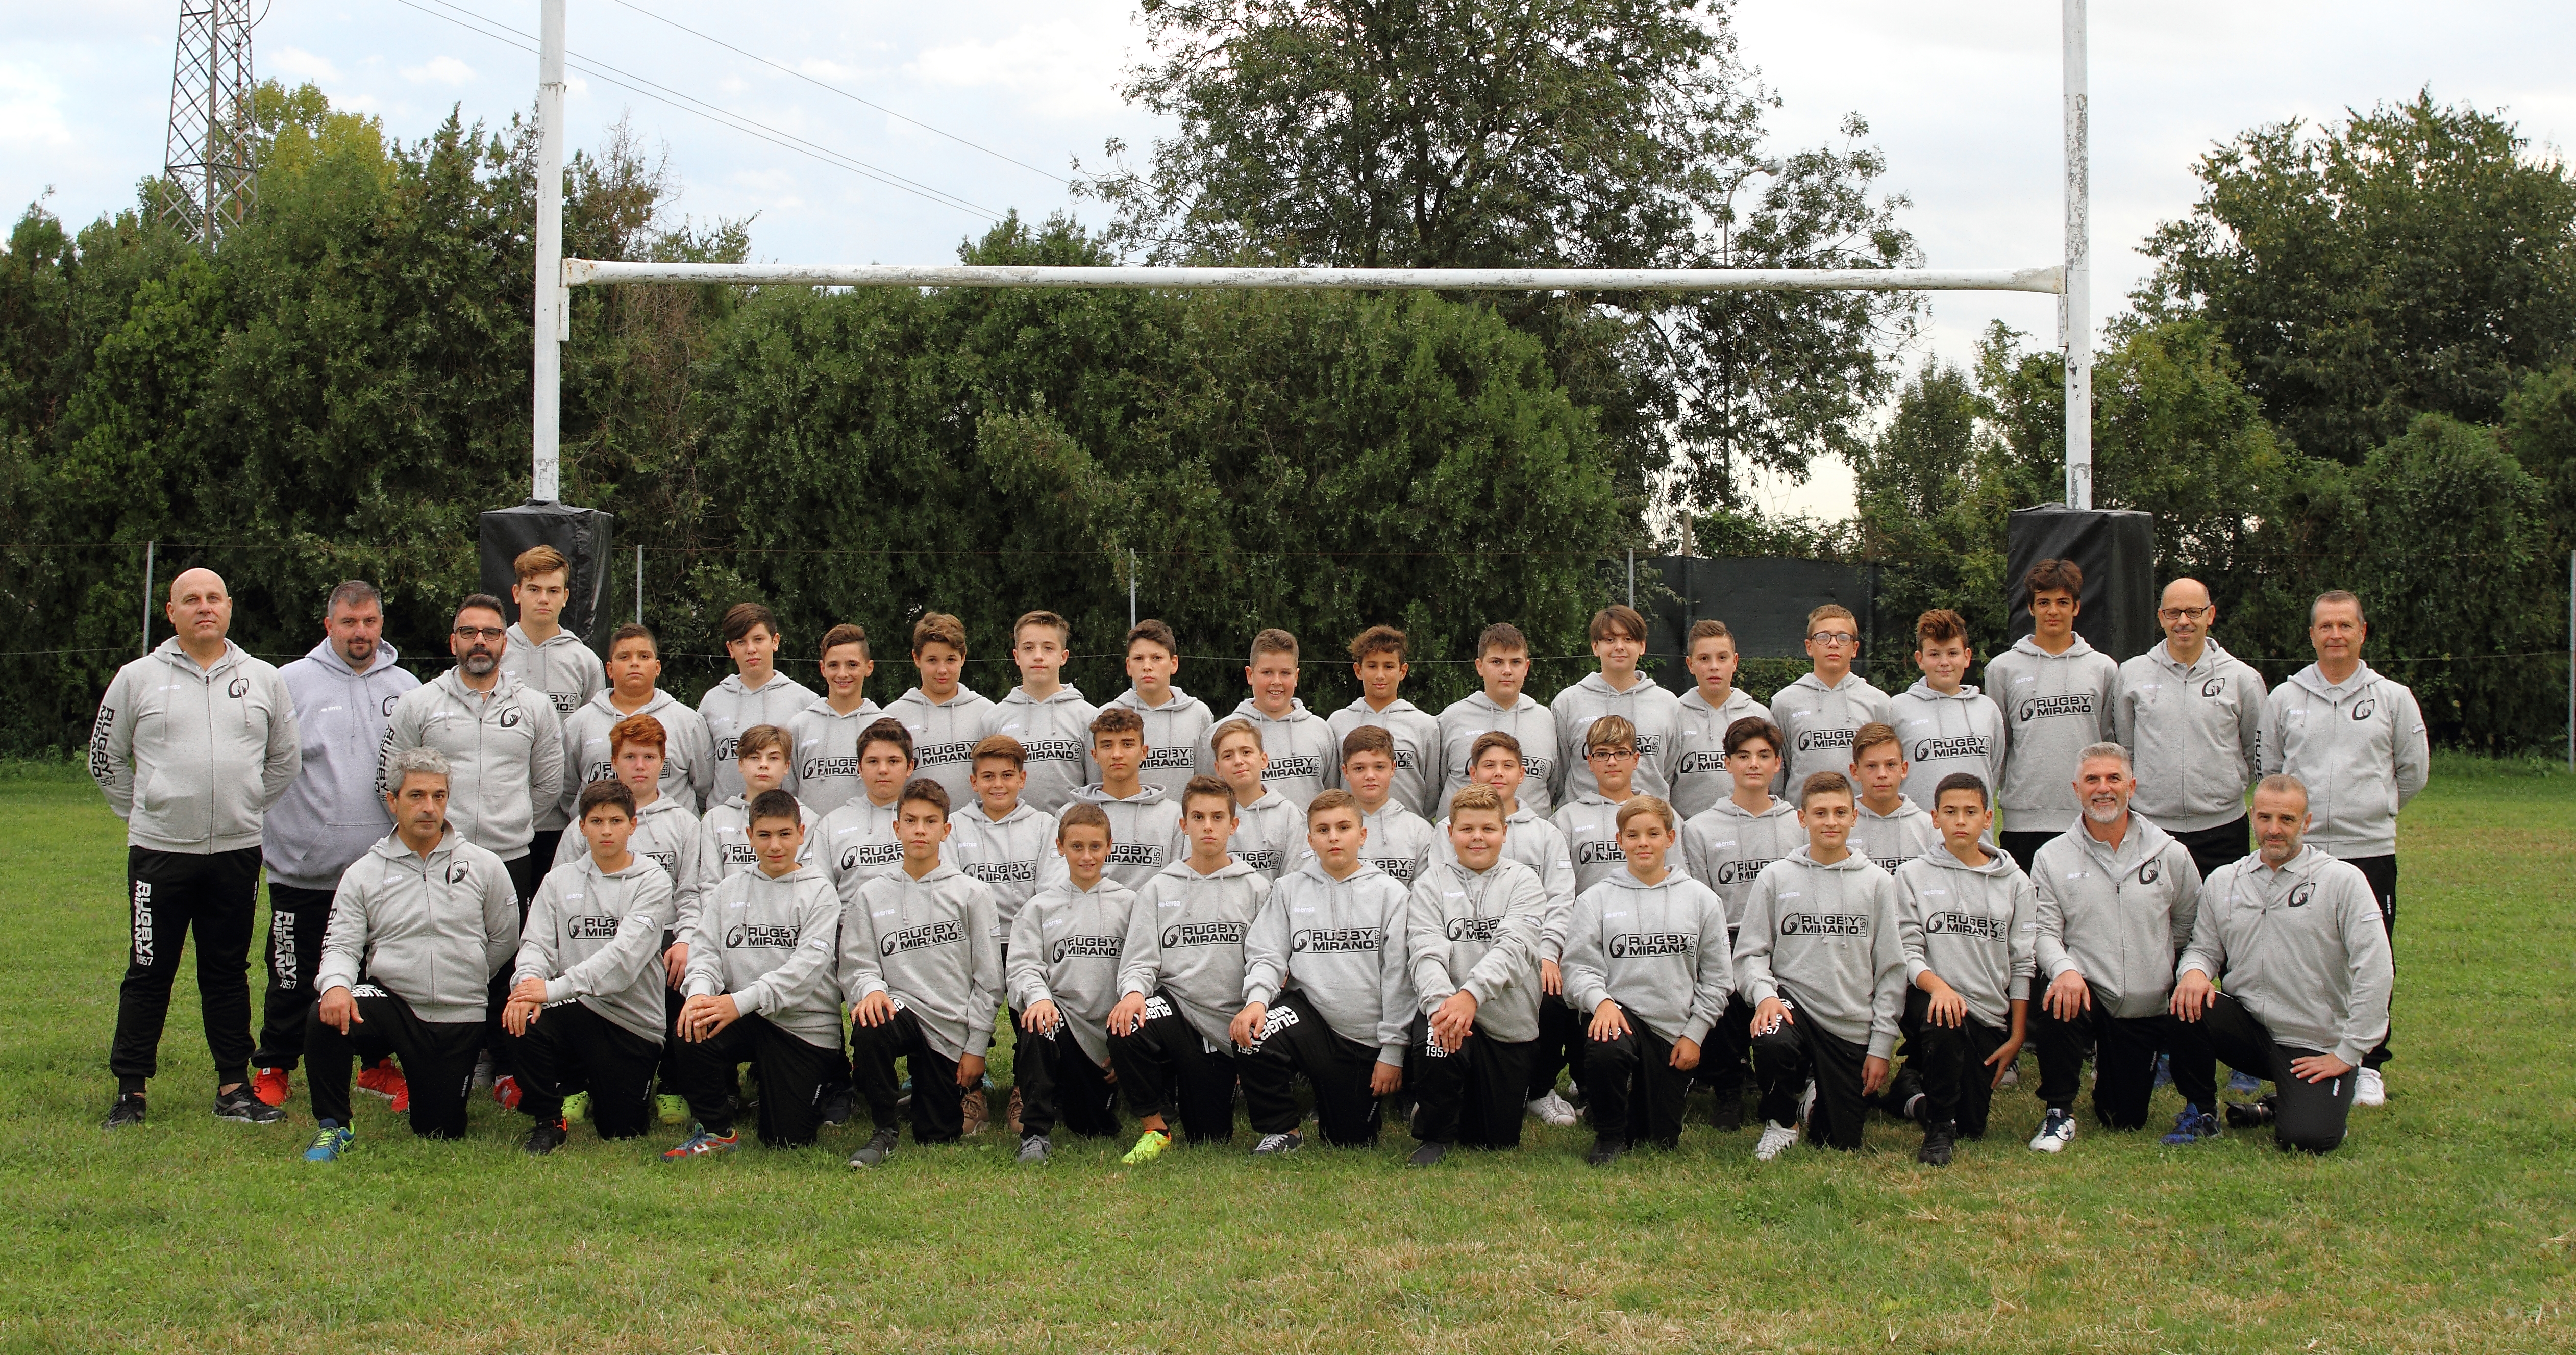 L'Under 14 di Rugby Mirano 1957 ASD per la stagione sportiva 2017/2018